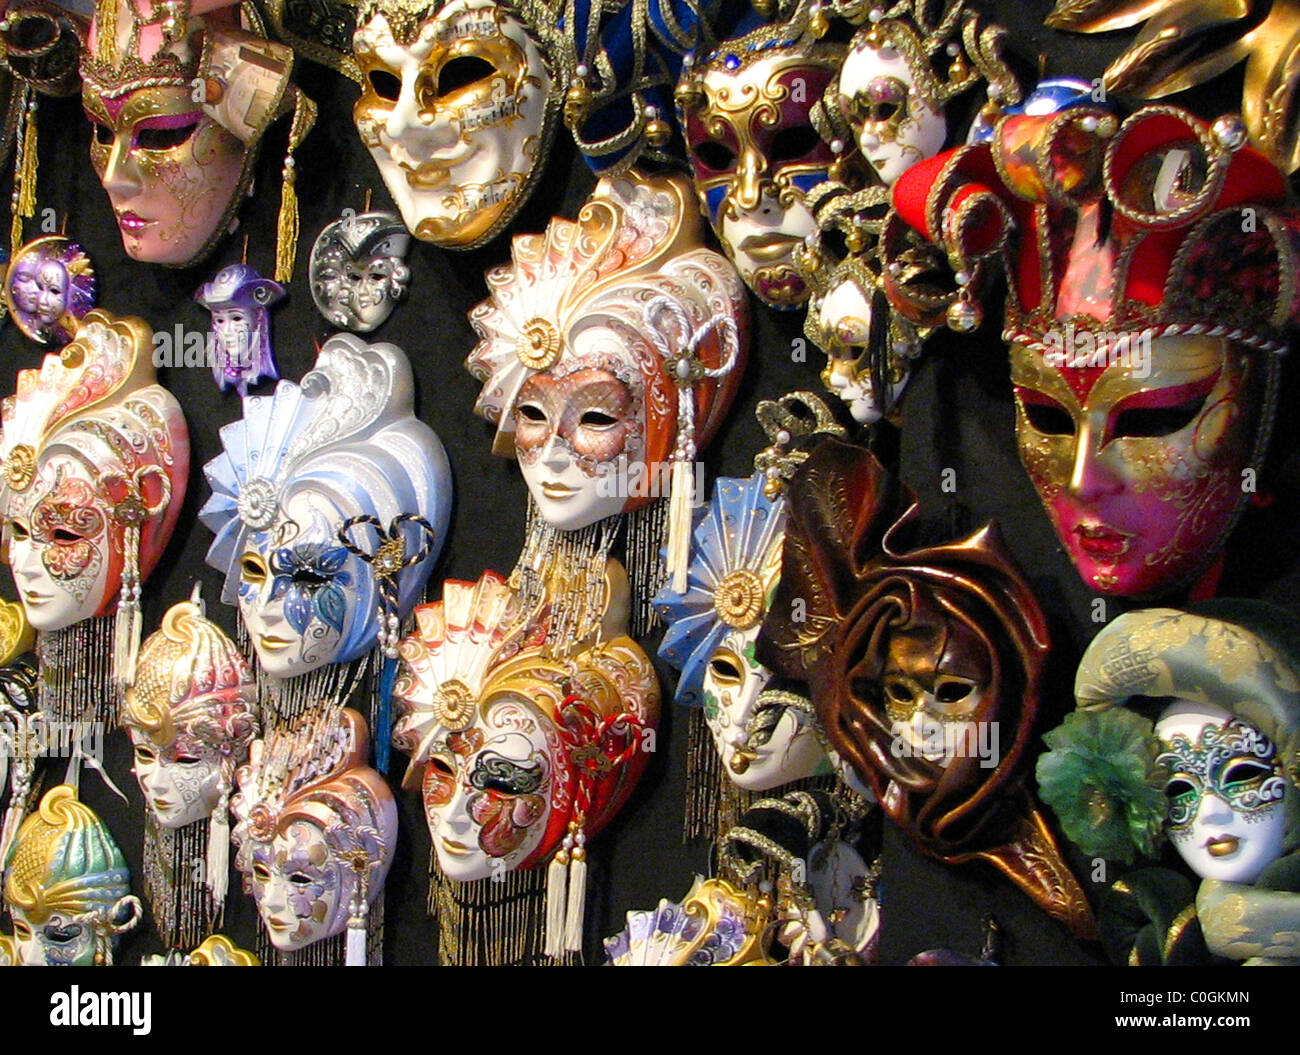 Venetian Carnival masks for sale in Venice, Italy Stock Photo - Alamy